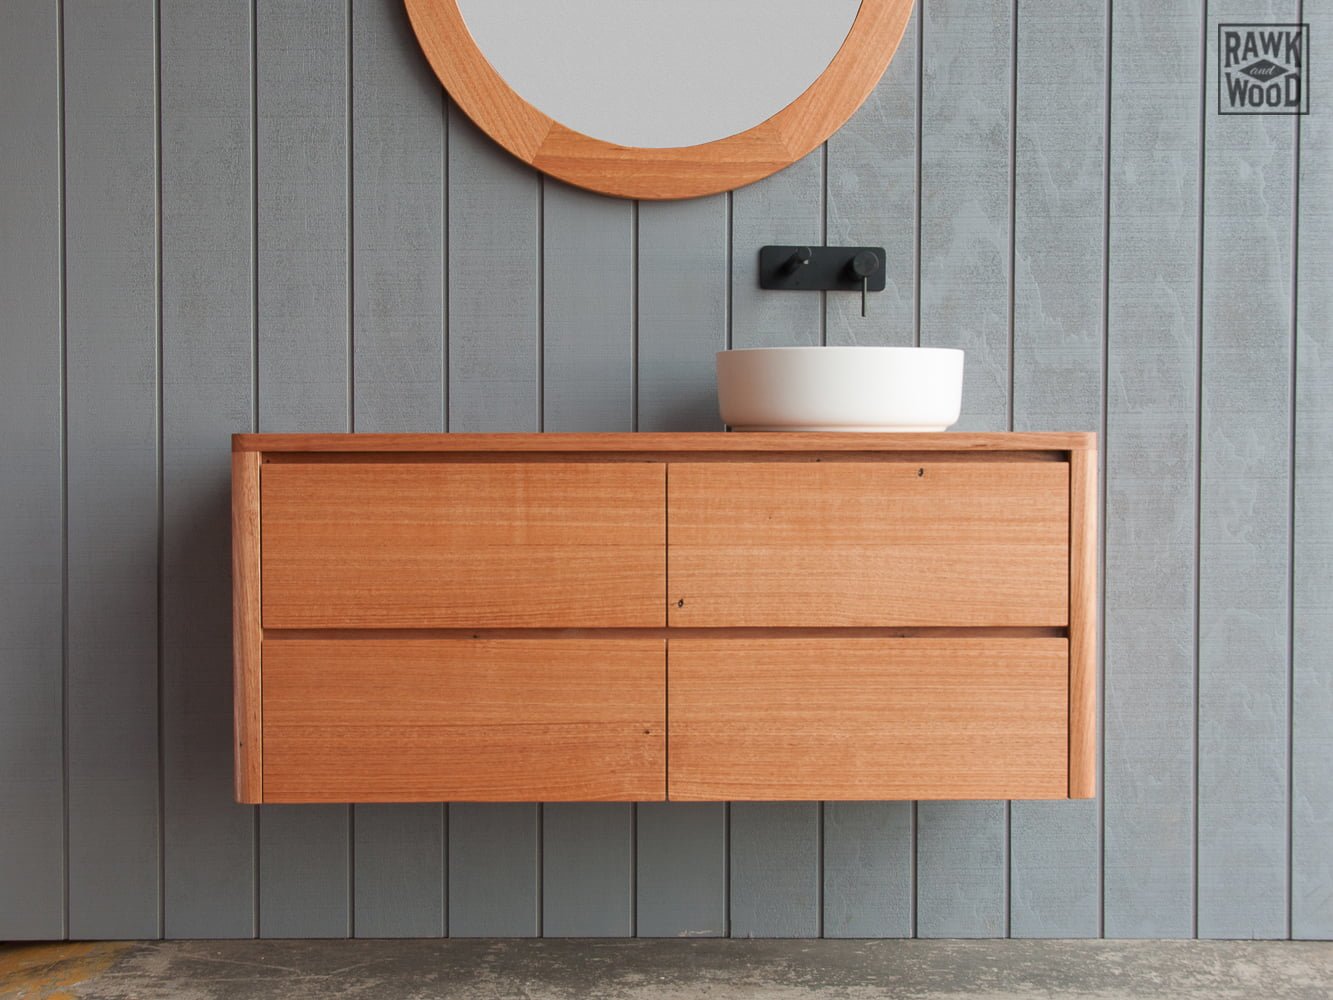 reclaimed-wood-bathroom-vanity, custom-made in Melbourne by Rawk and Wood